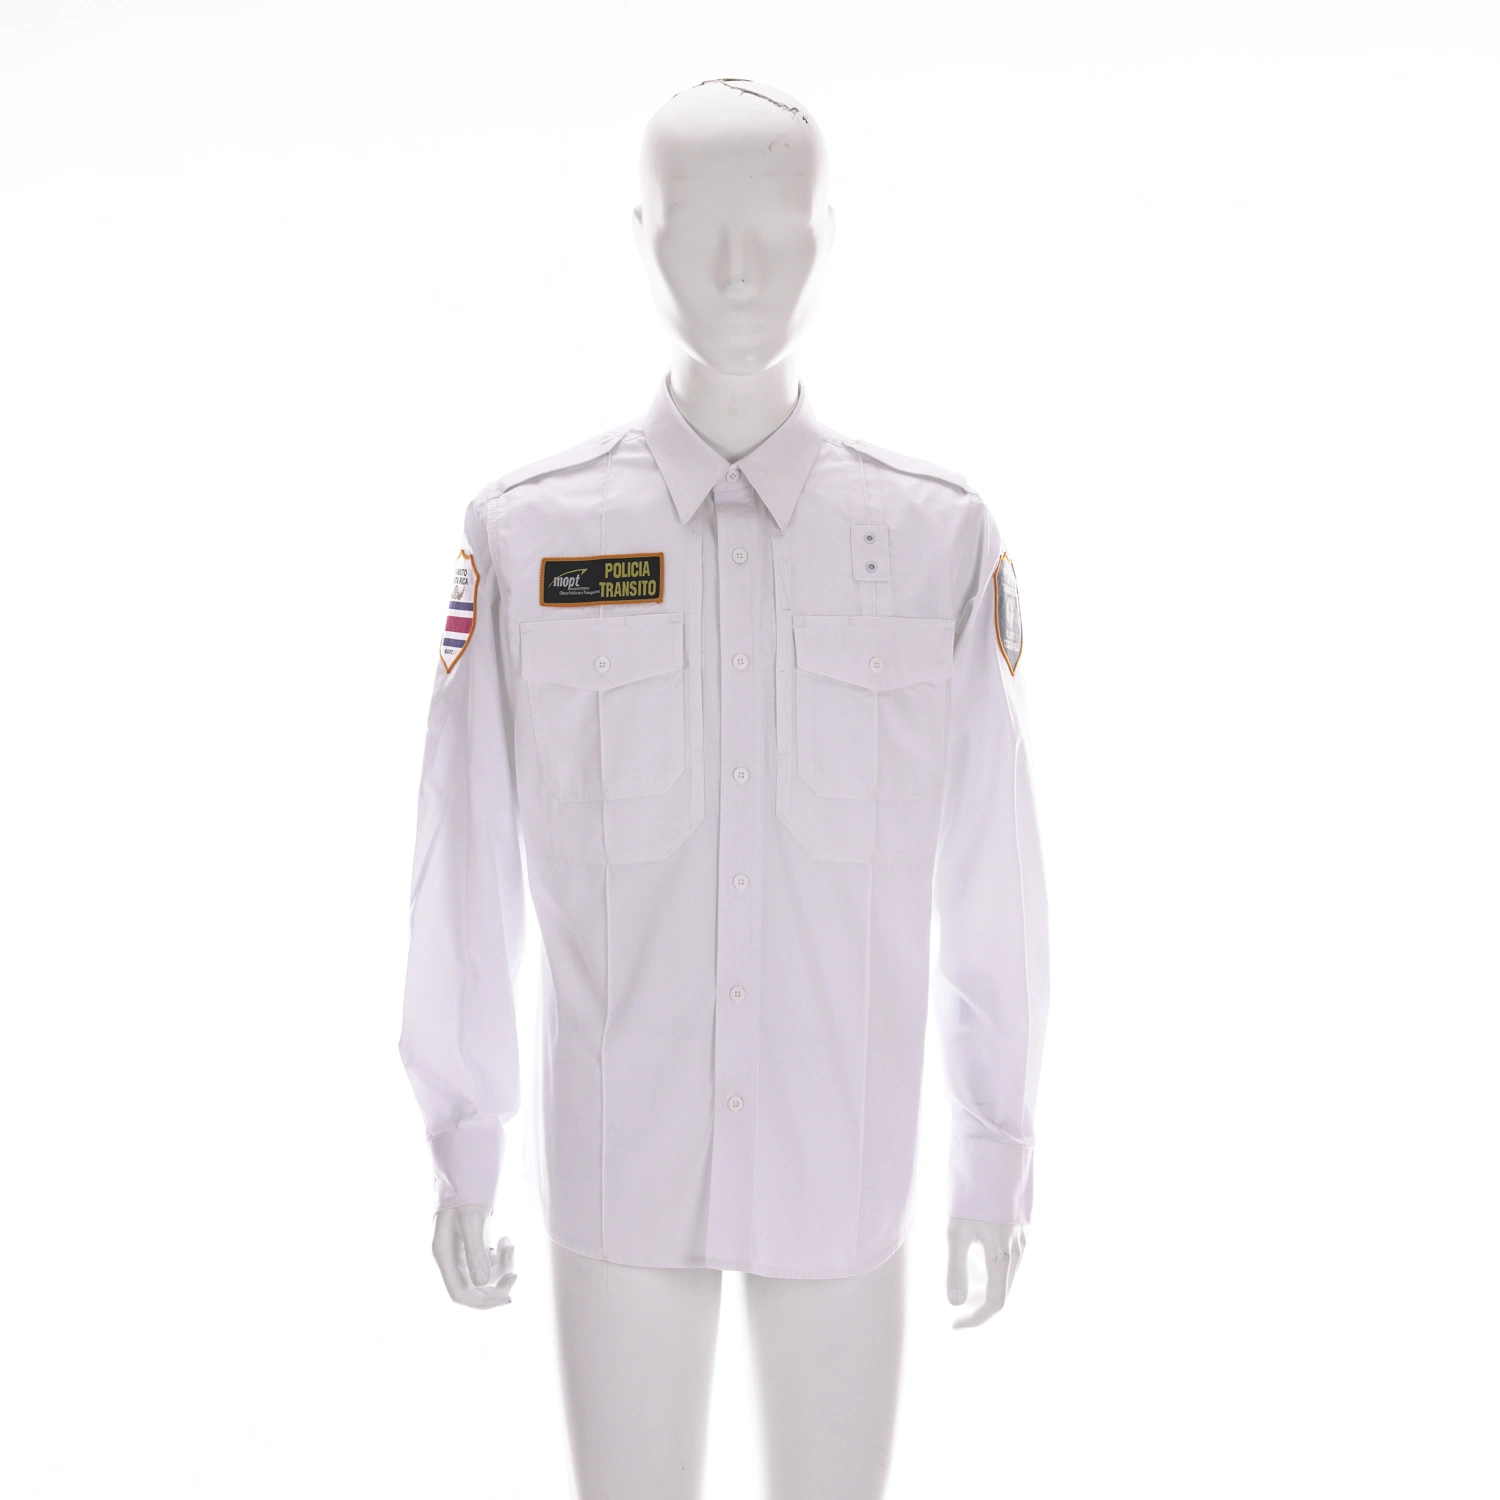 Unisex Workwear camisas uniformes